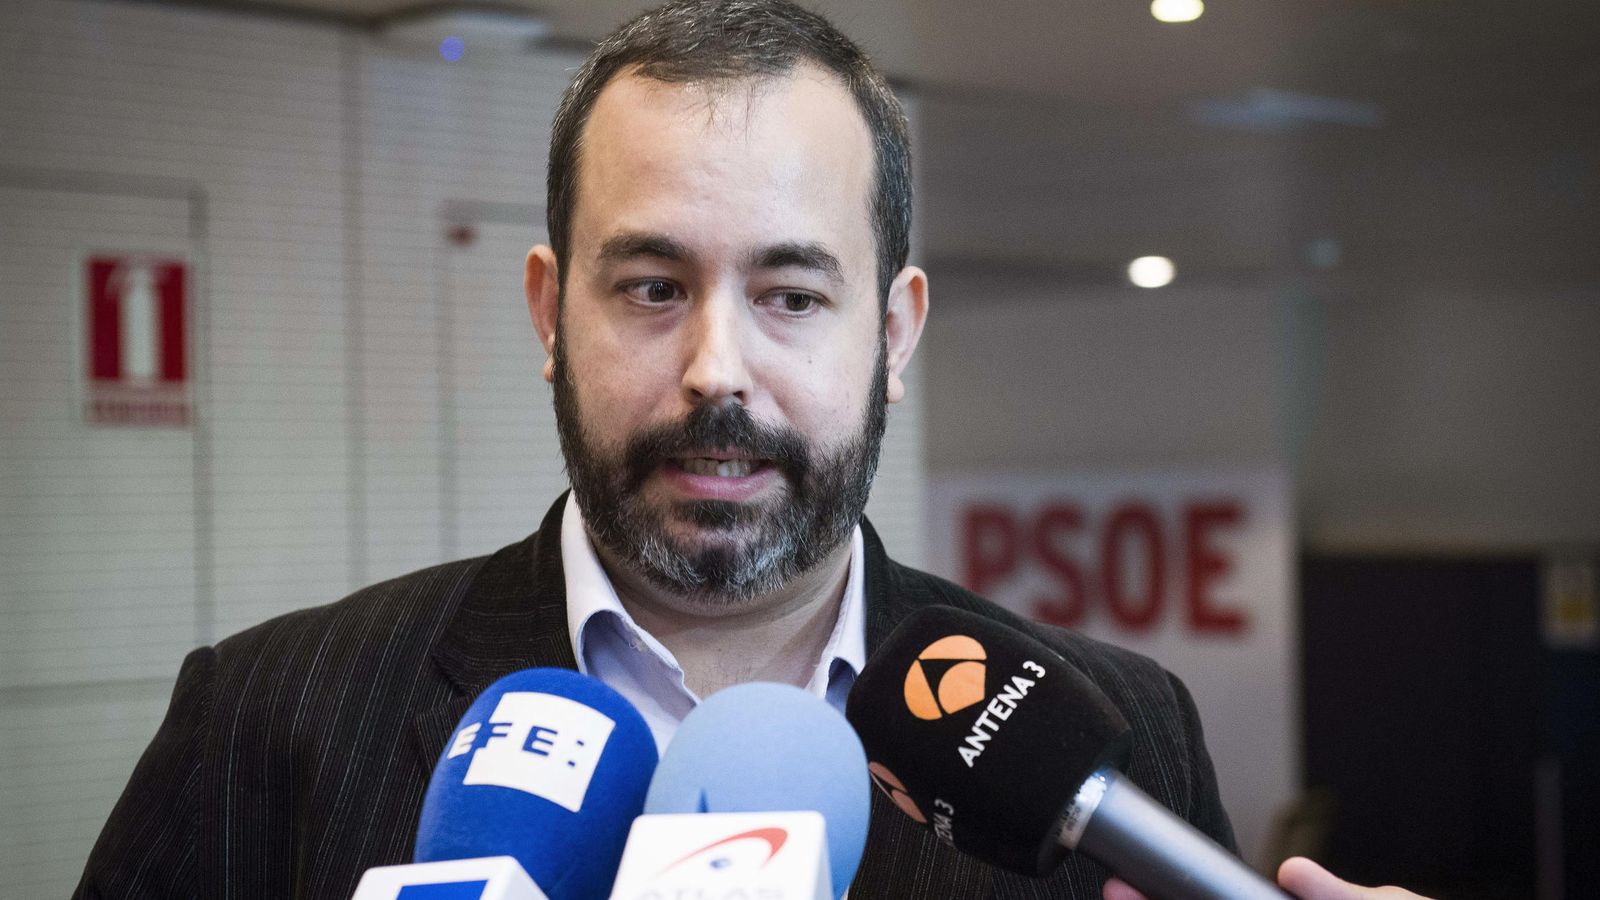 Foto: Sergio Cebolla, precandidato a las primarias del PSOE. (EFE)